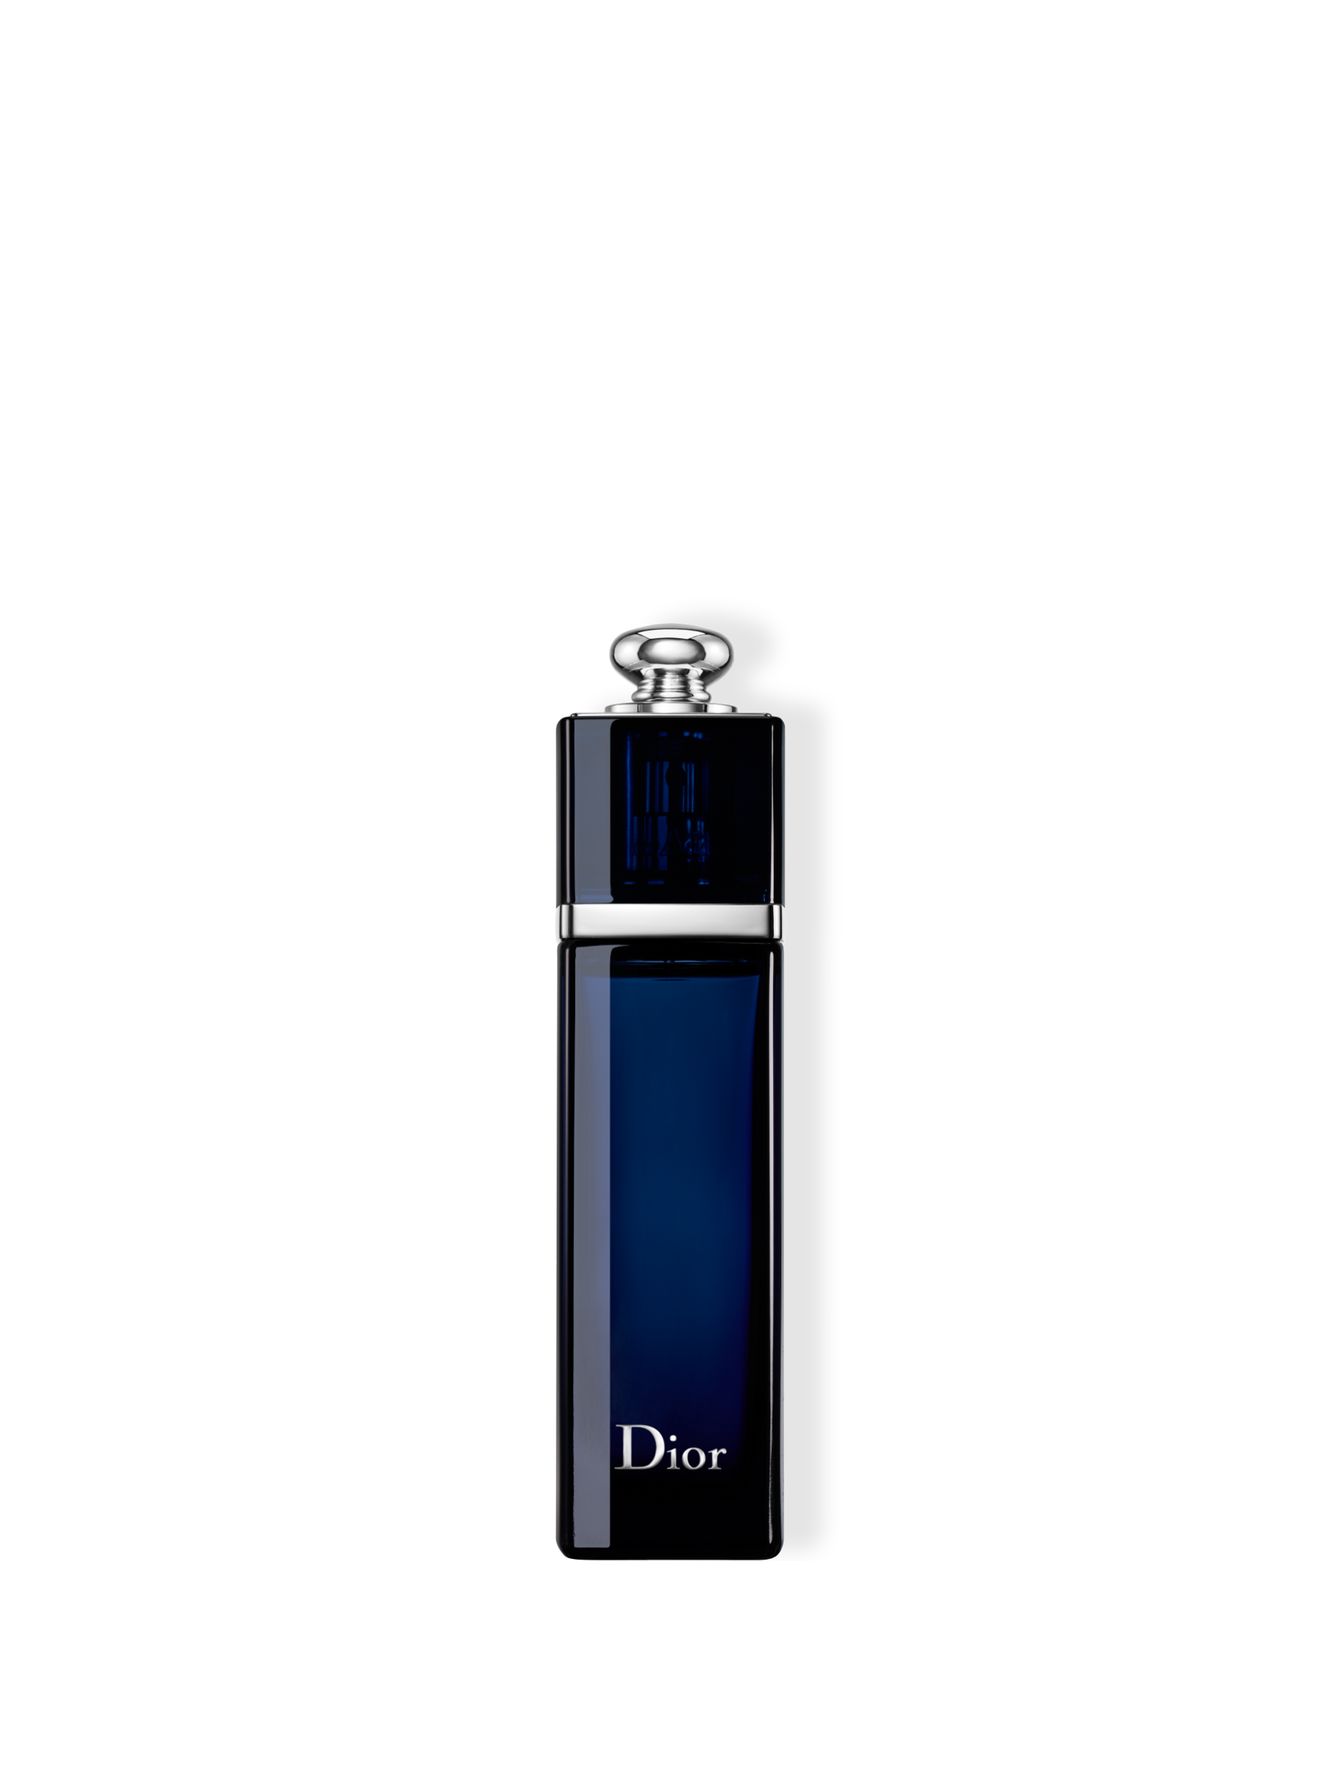 Dior Addict Парфюмерная вода  50 мл - Общий вид